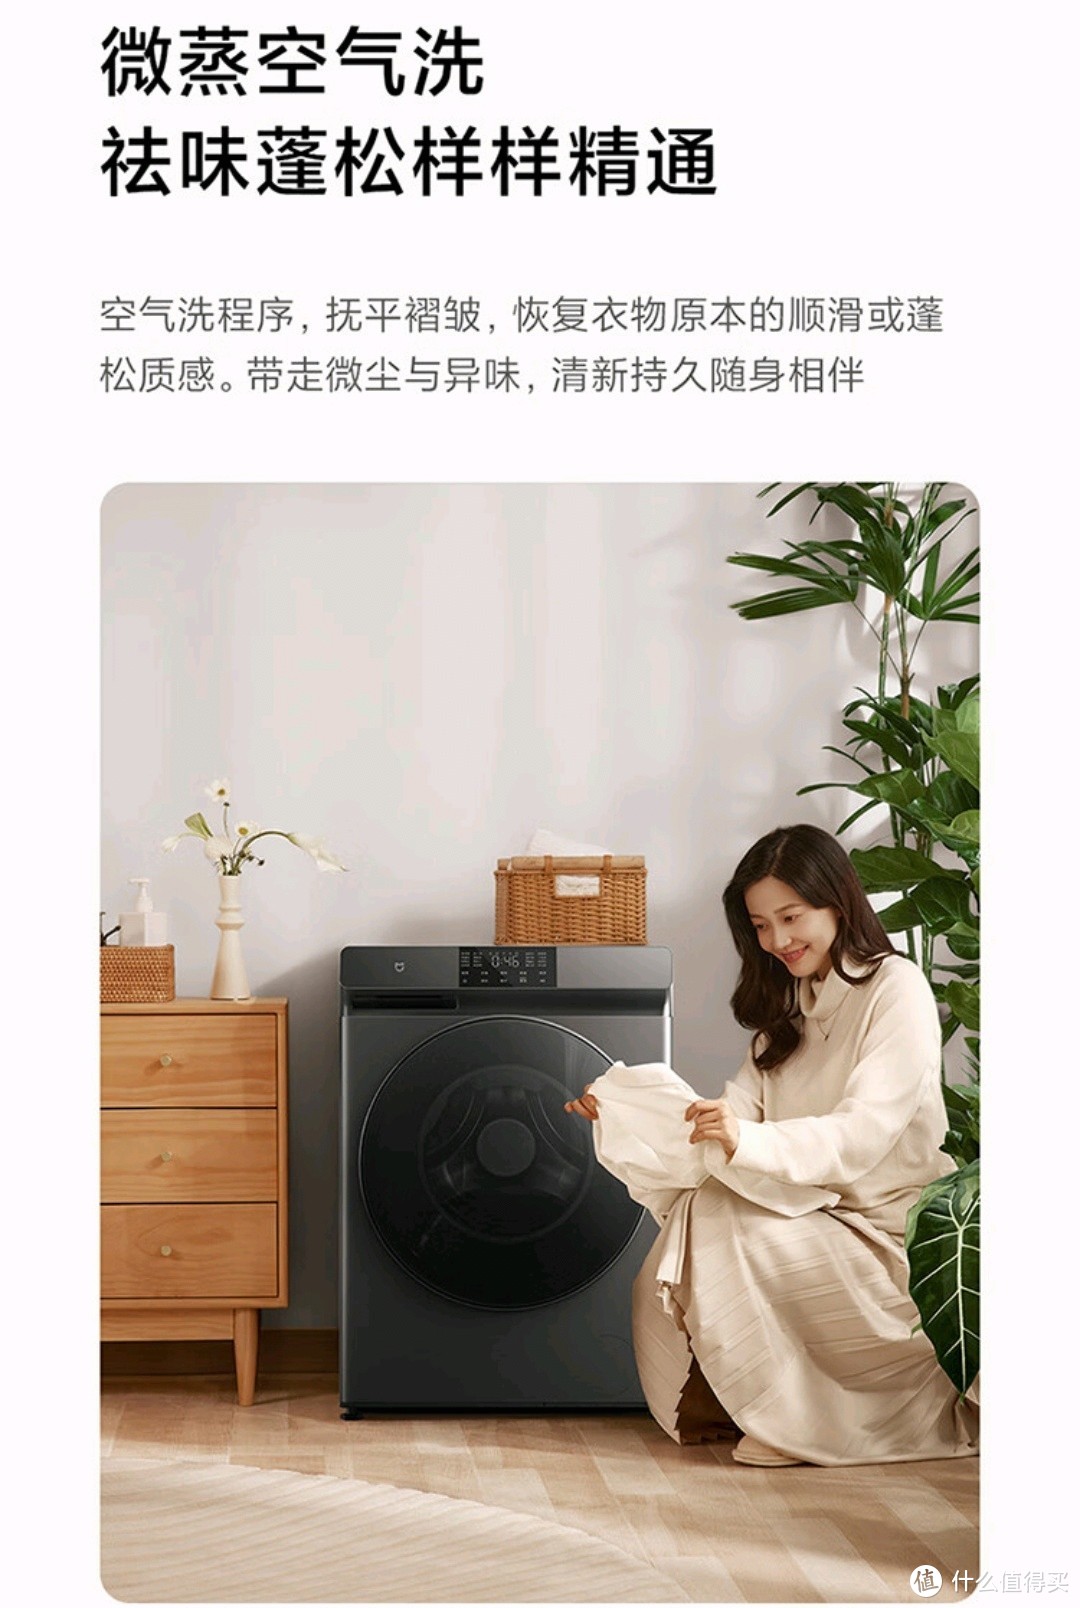 为什么米家小米滚筒洗衣机是她的居家好物